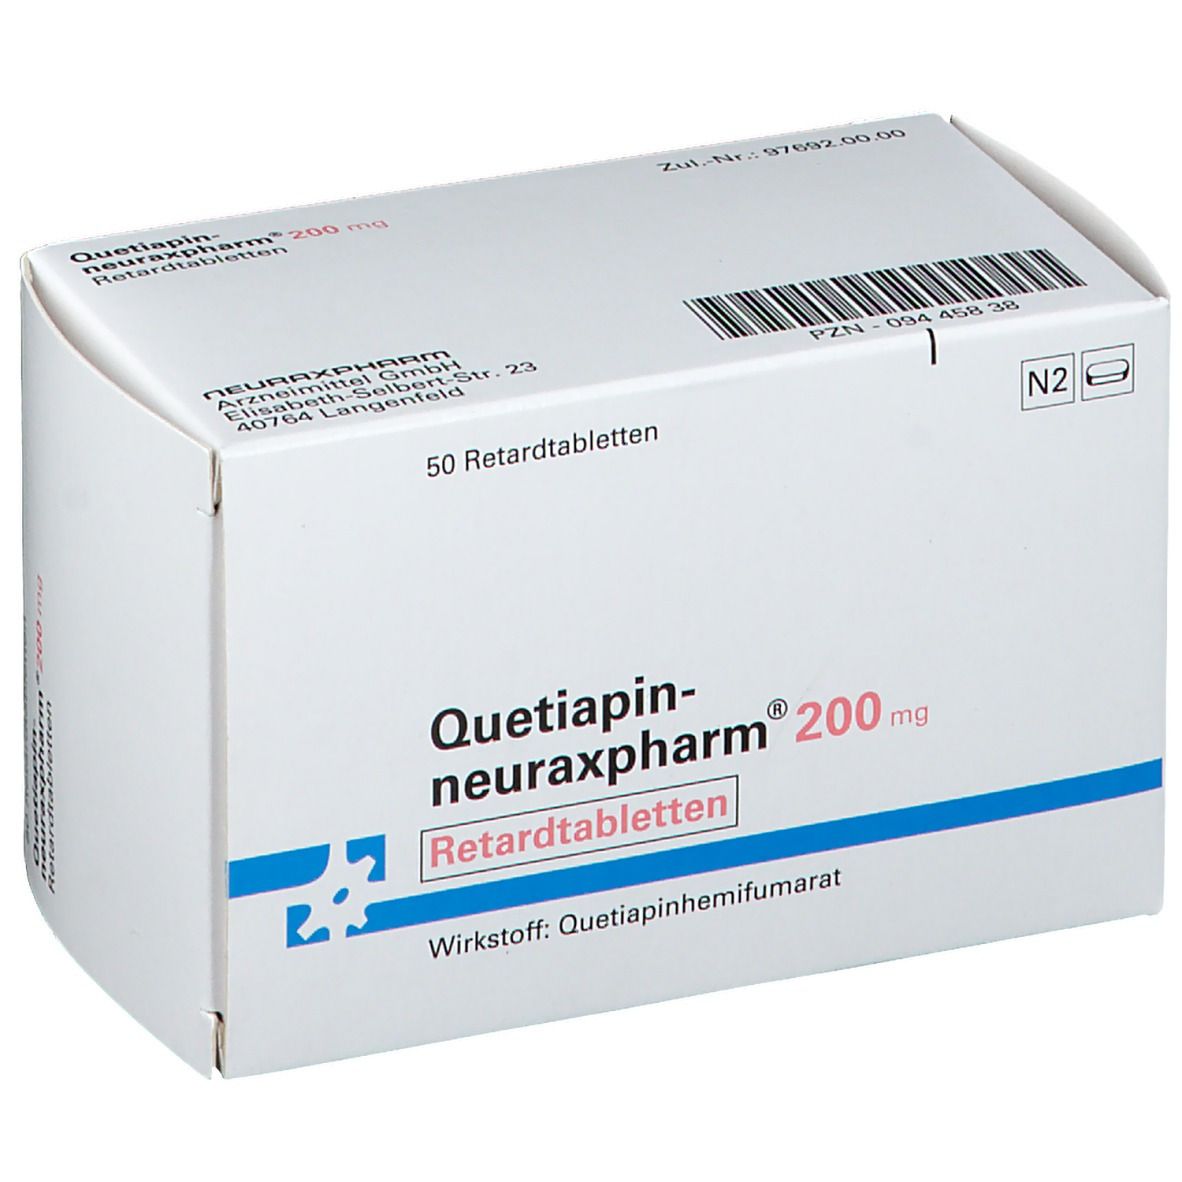 Quetiapin-neuraxpharm® 200 mg